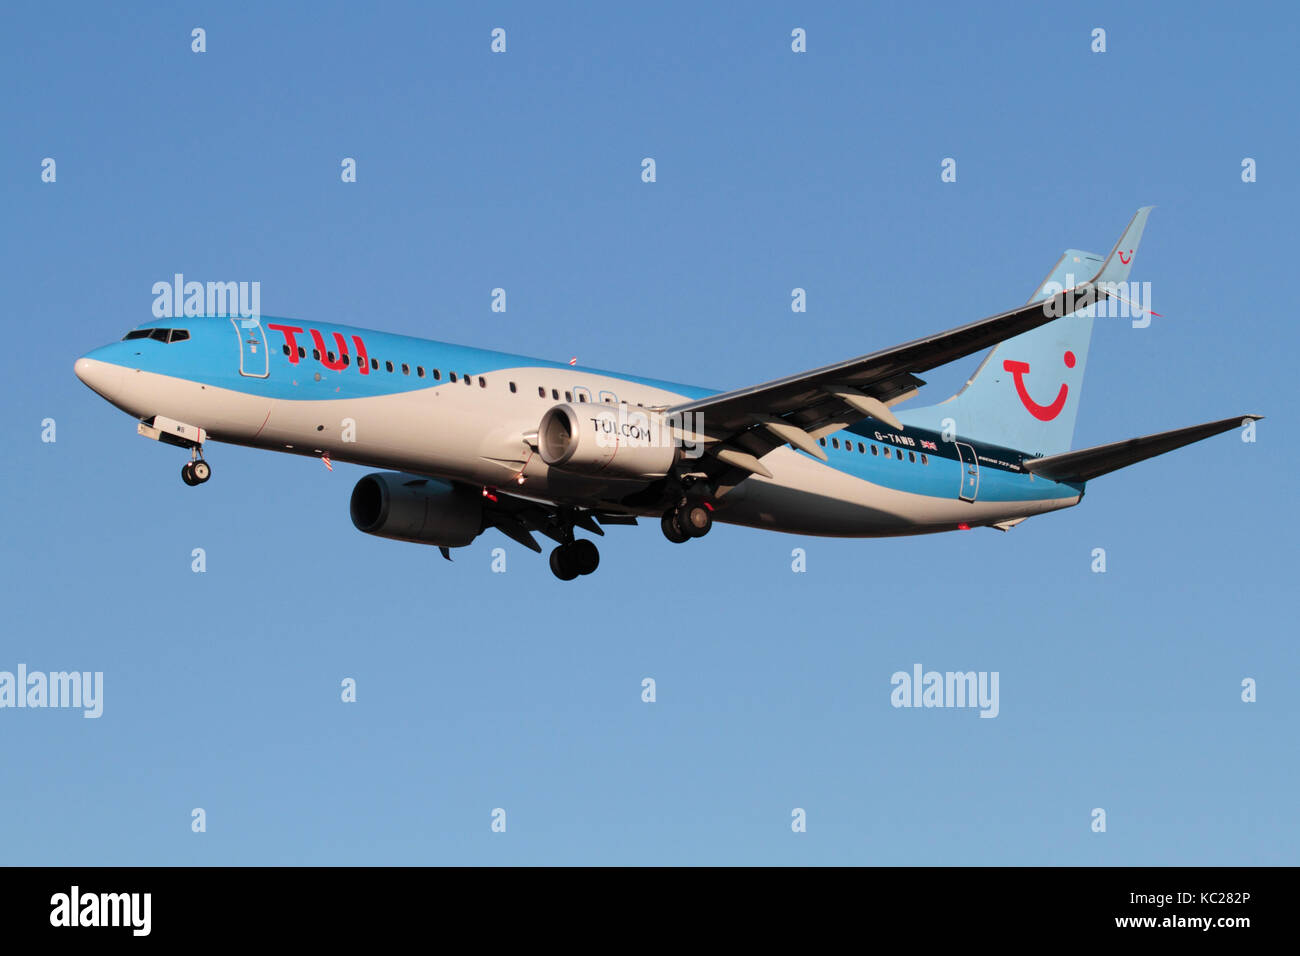 Kommerzielle Luftfahrt. TUI Airlines (vormals Thomson Airways) Boeing 737-800 Passenger Jet Flugzeug auf Ansatz Stockfoto